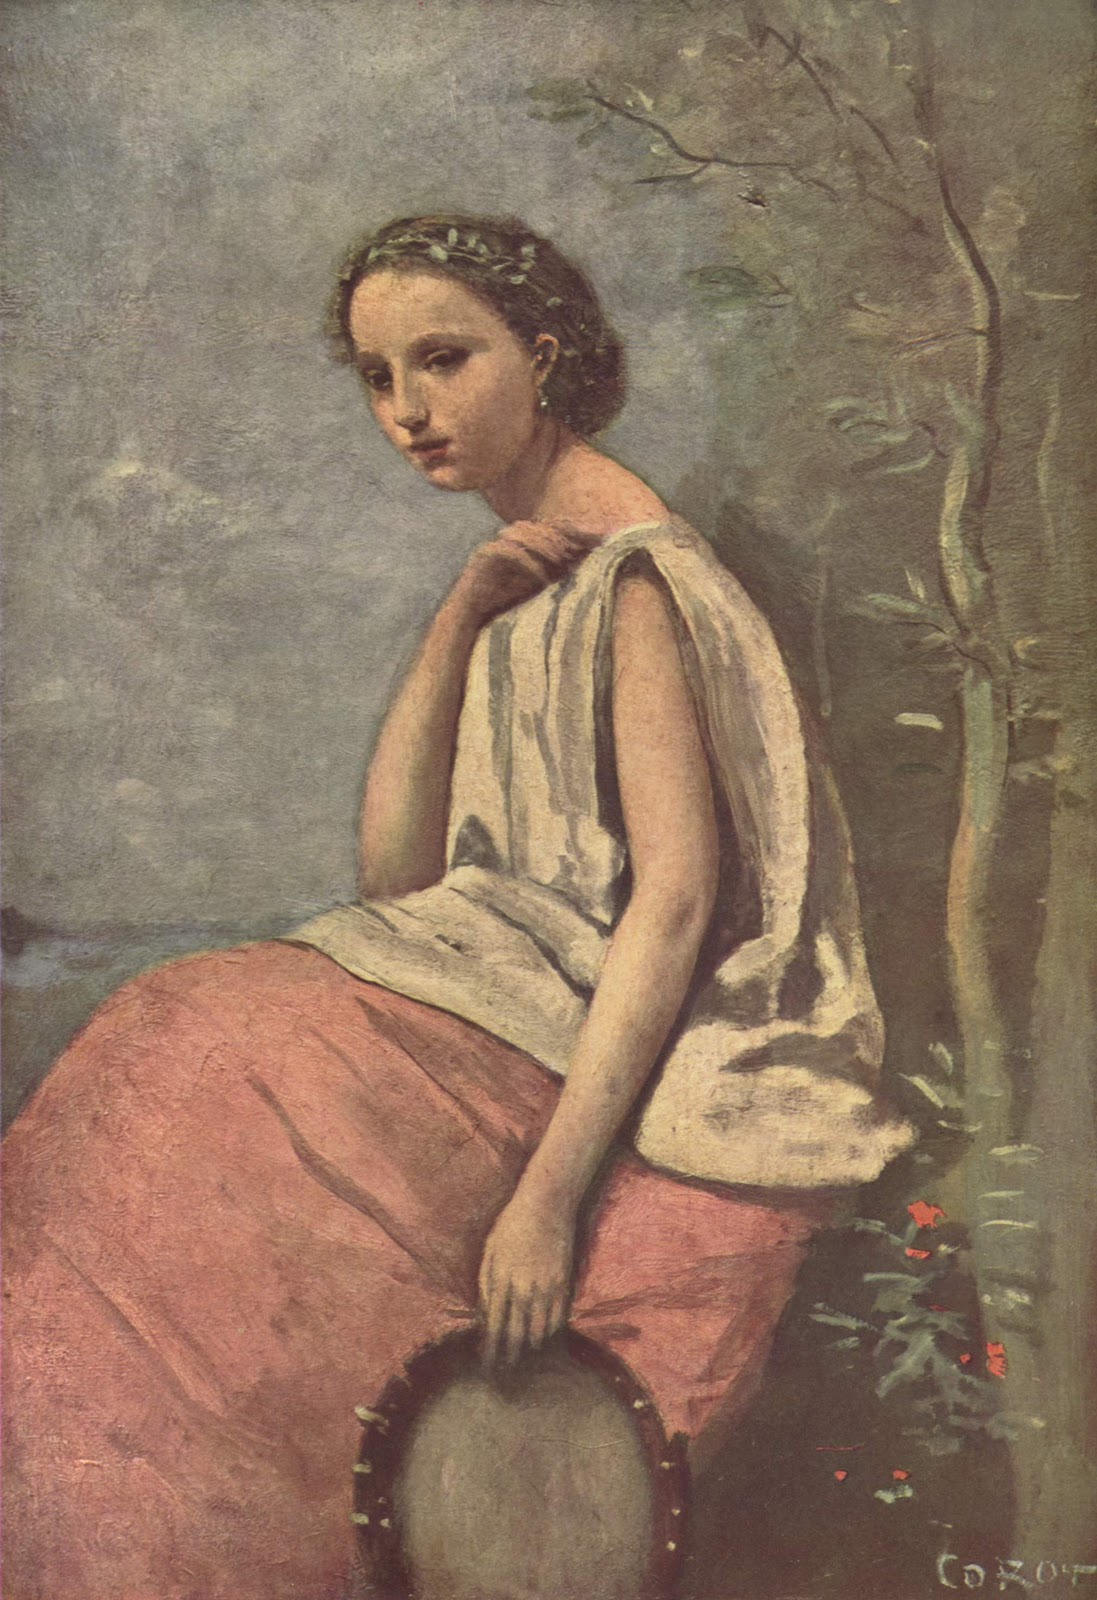 Jean+Baptiste+Camille+Corot-1796-1875 (234).jpg